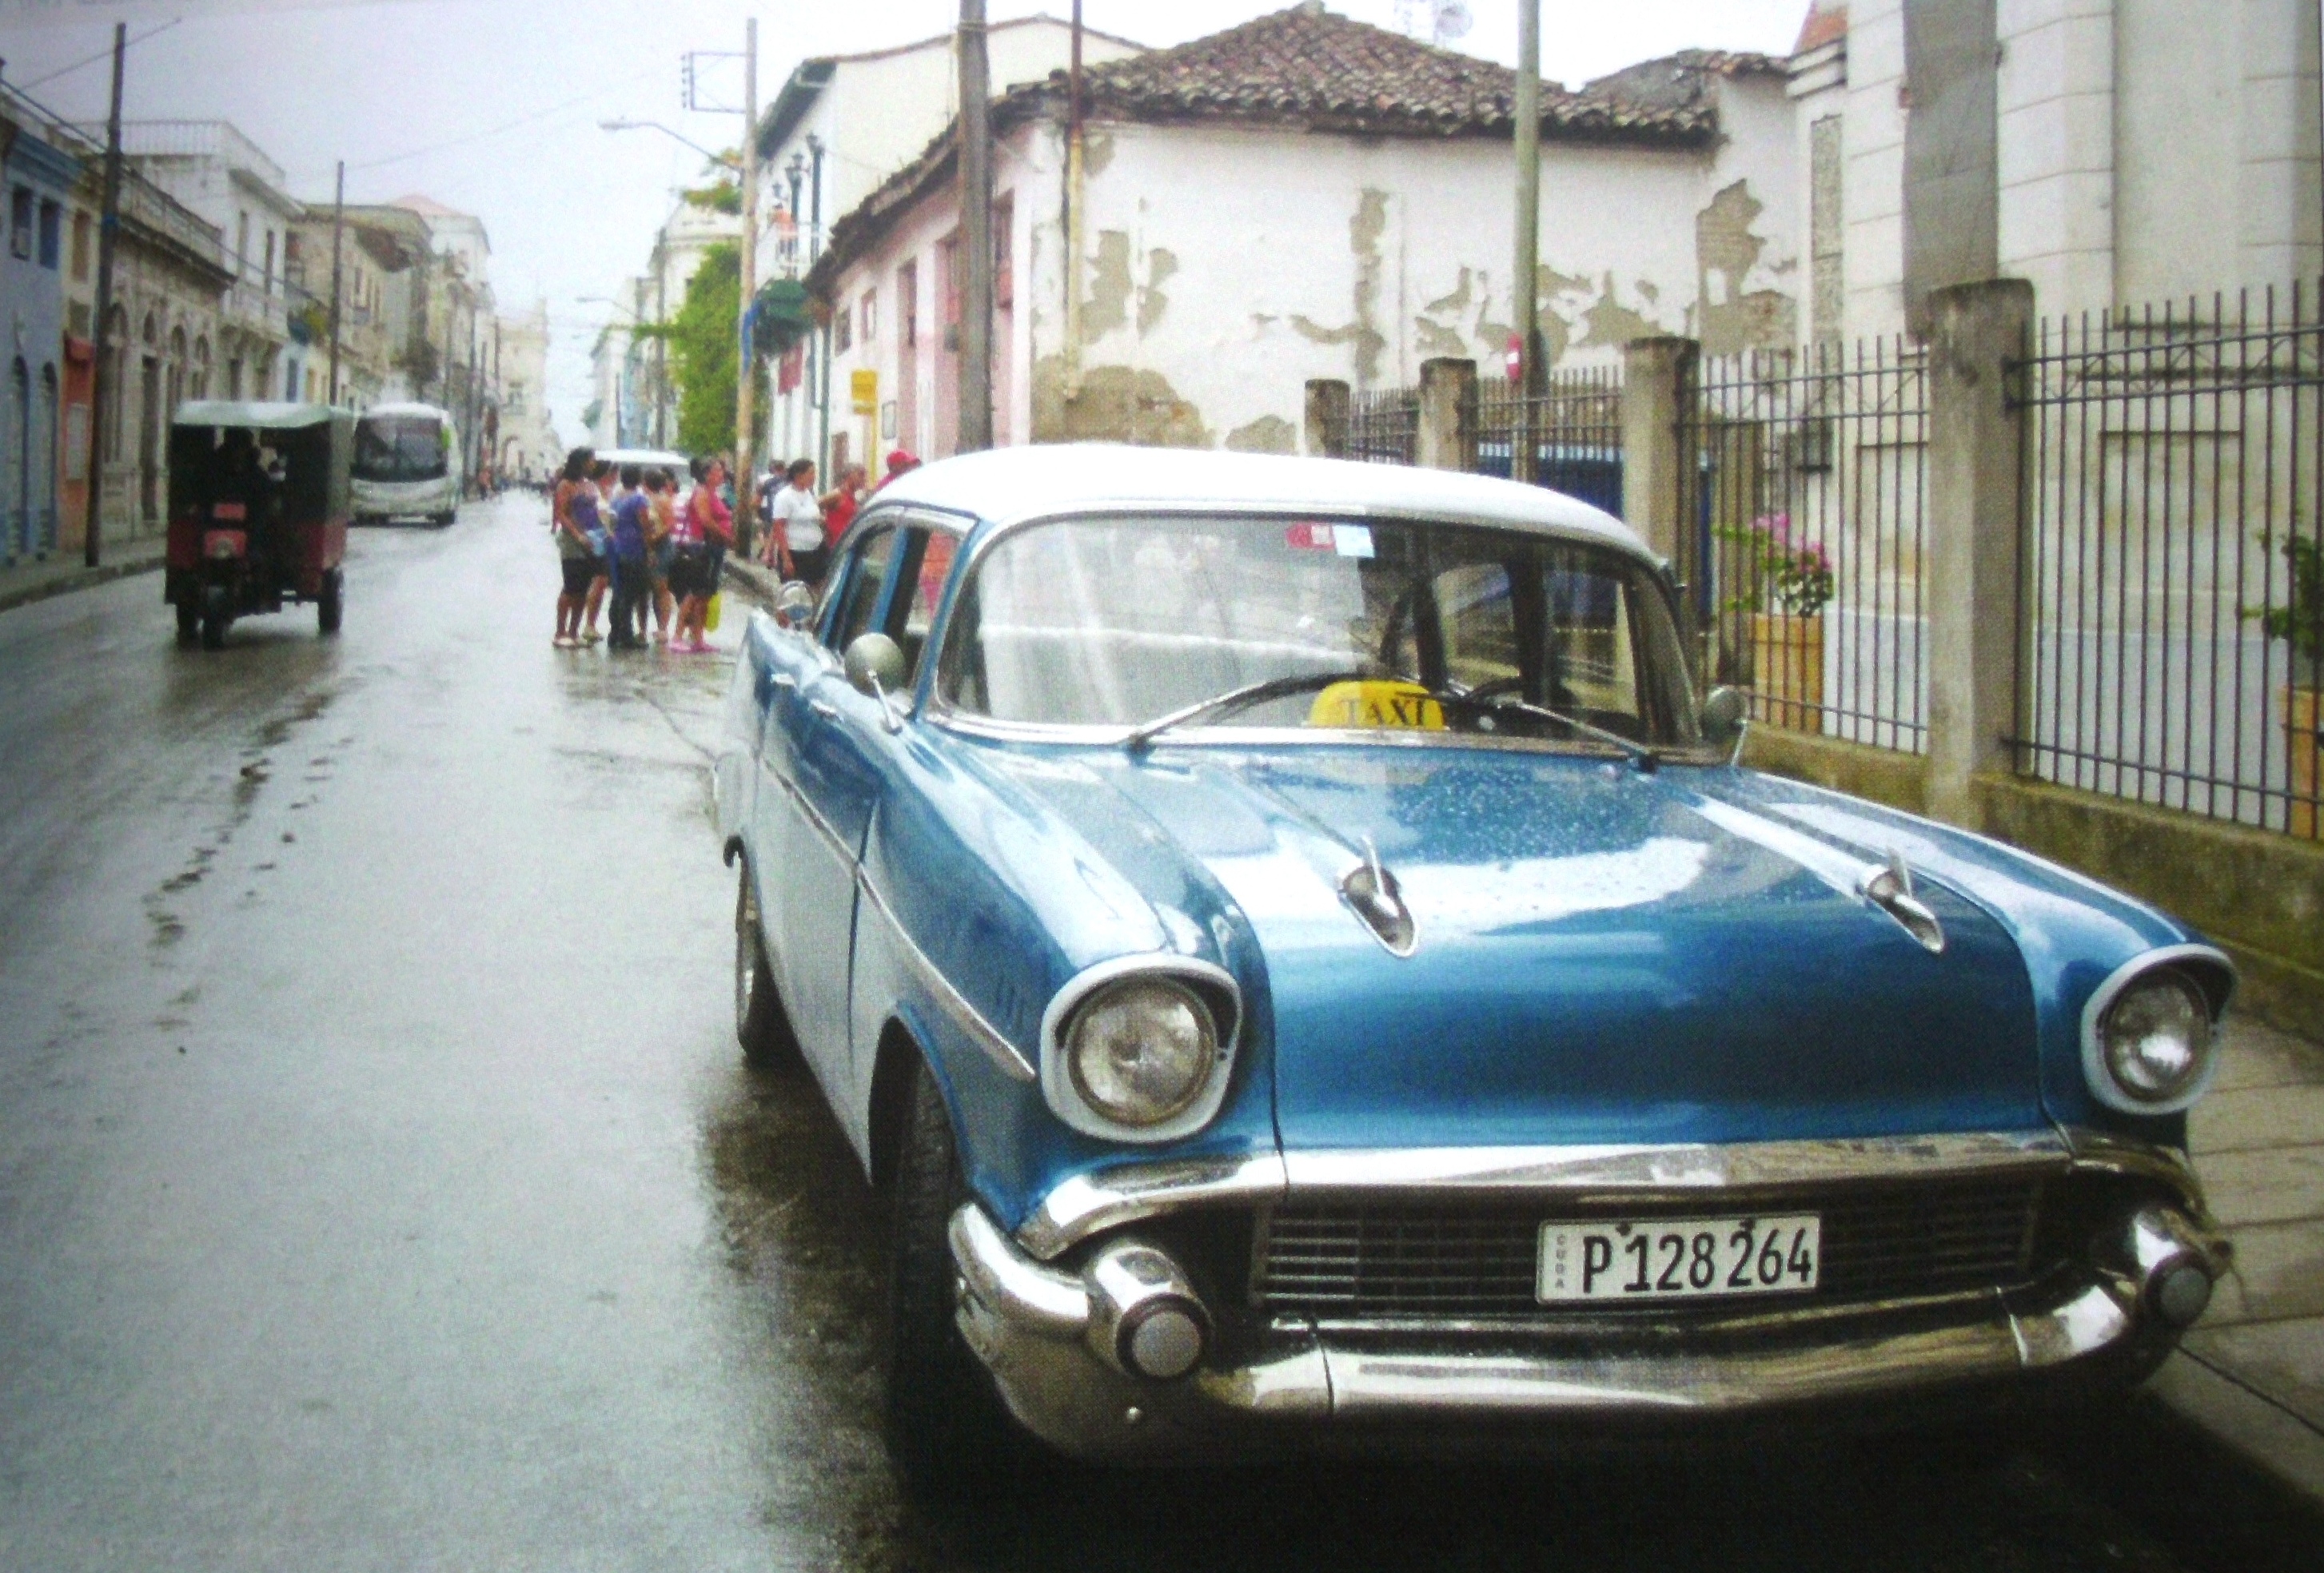 Центральная улица, г. Санта-Клара, Куба